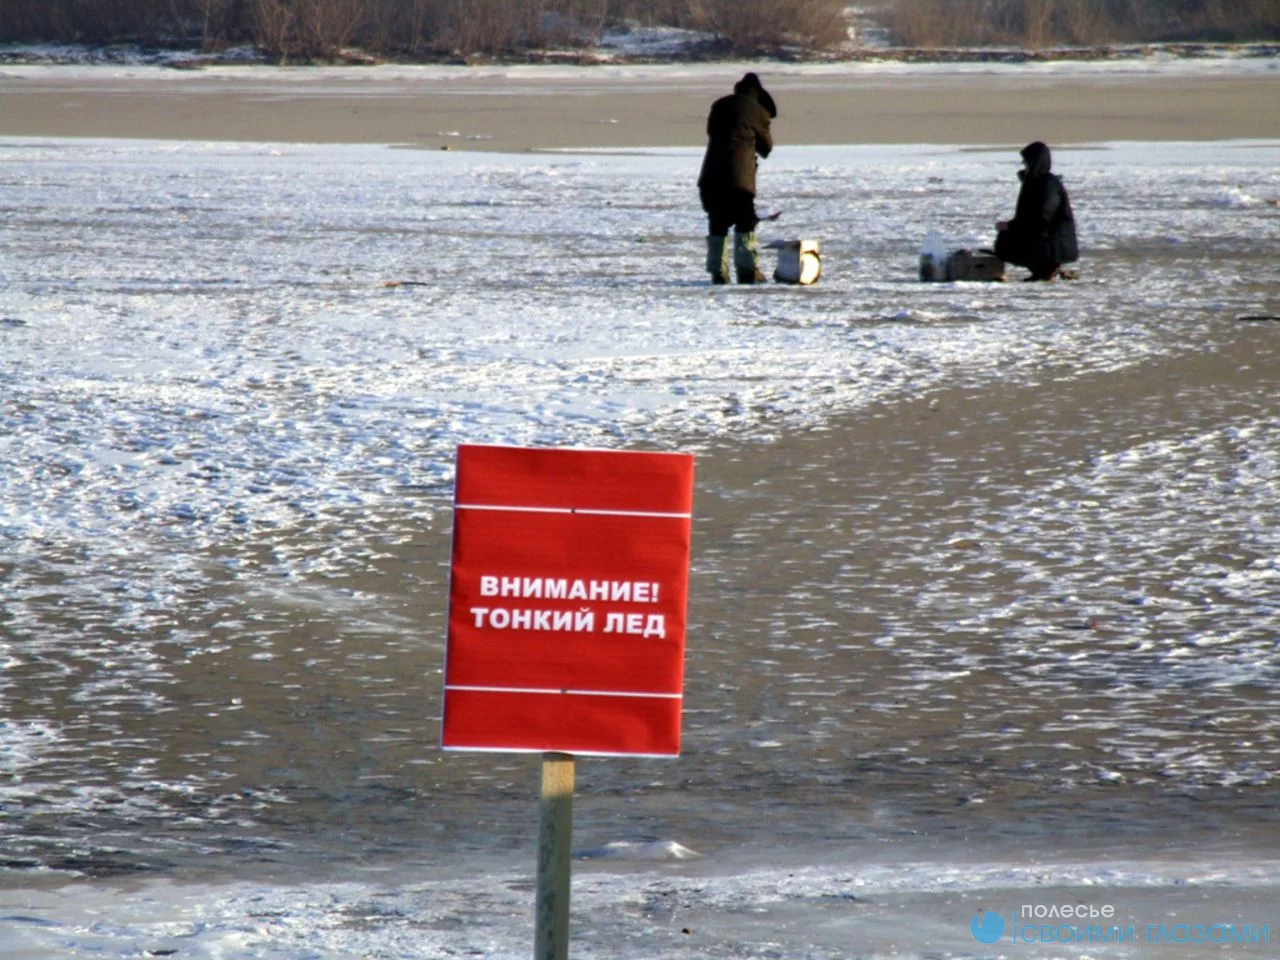 ОСВОД предупреждает: из-за оттепели лёд стал небезопасным